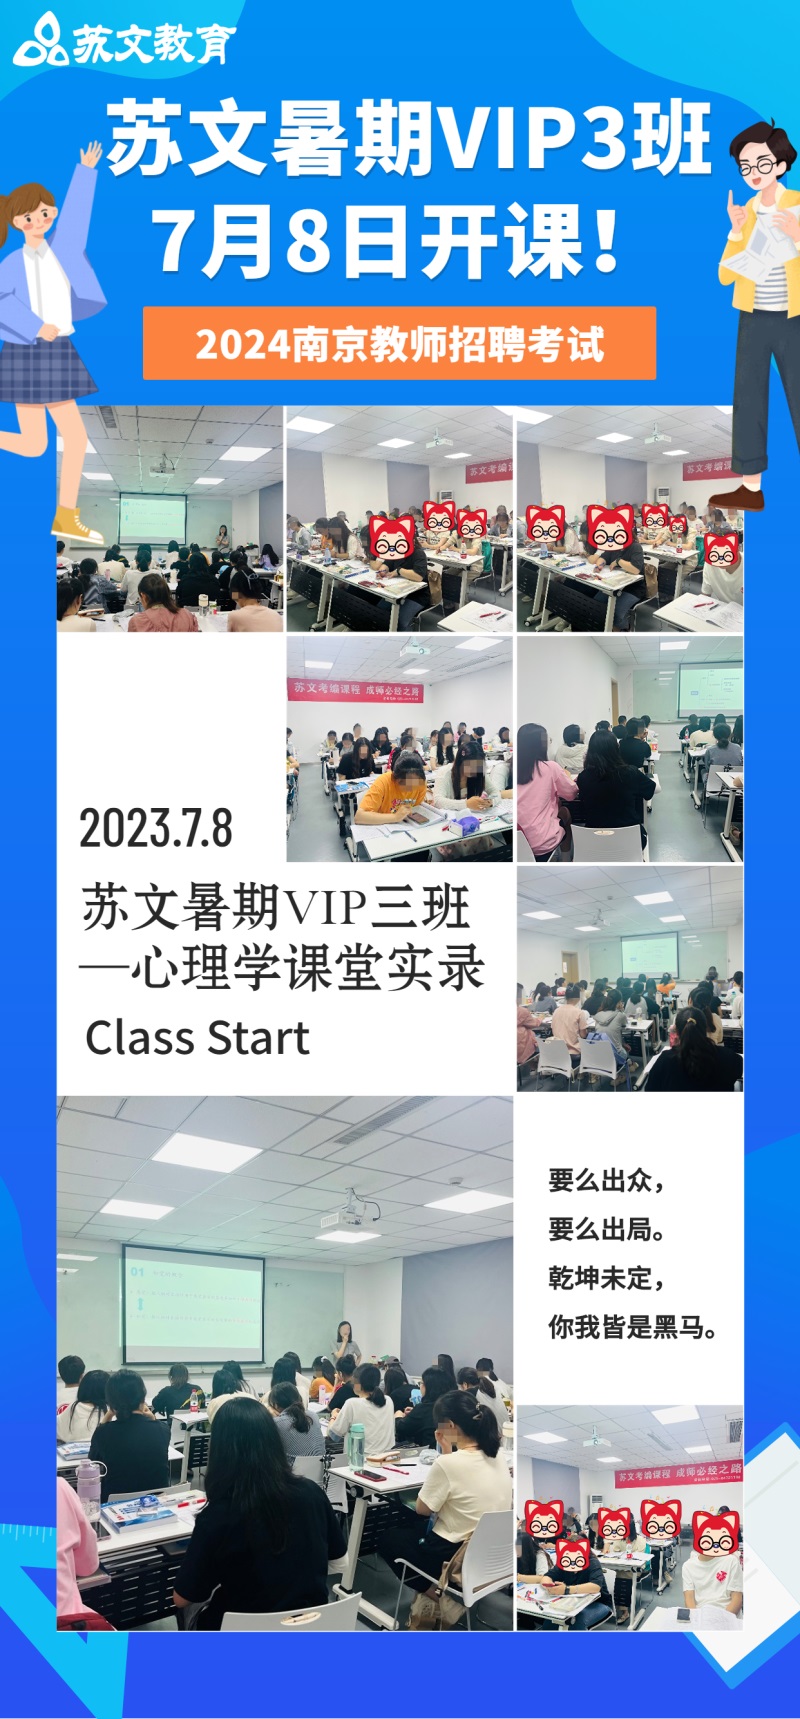 618课程招生暑期特惠促销手机海报 (1).jpg